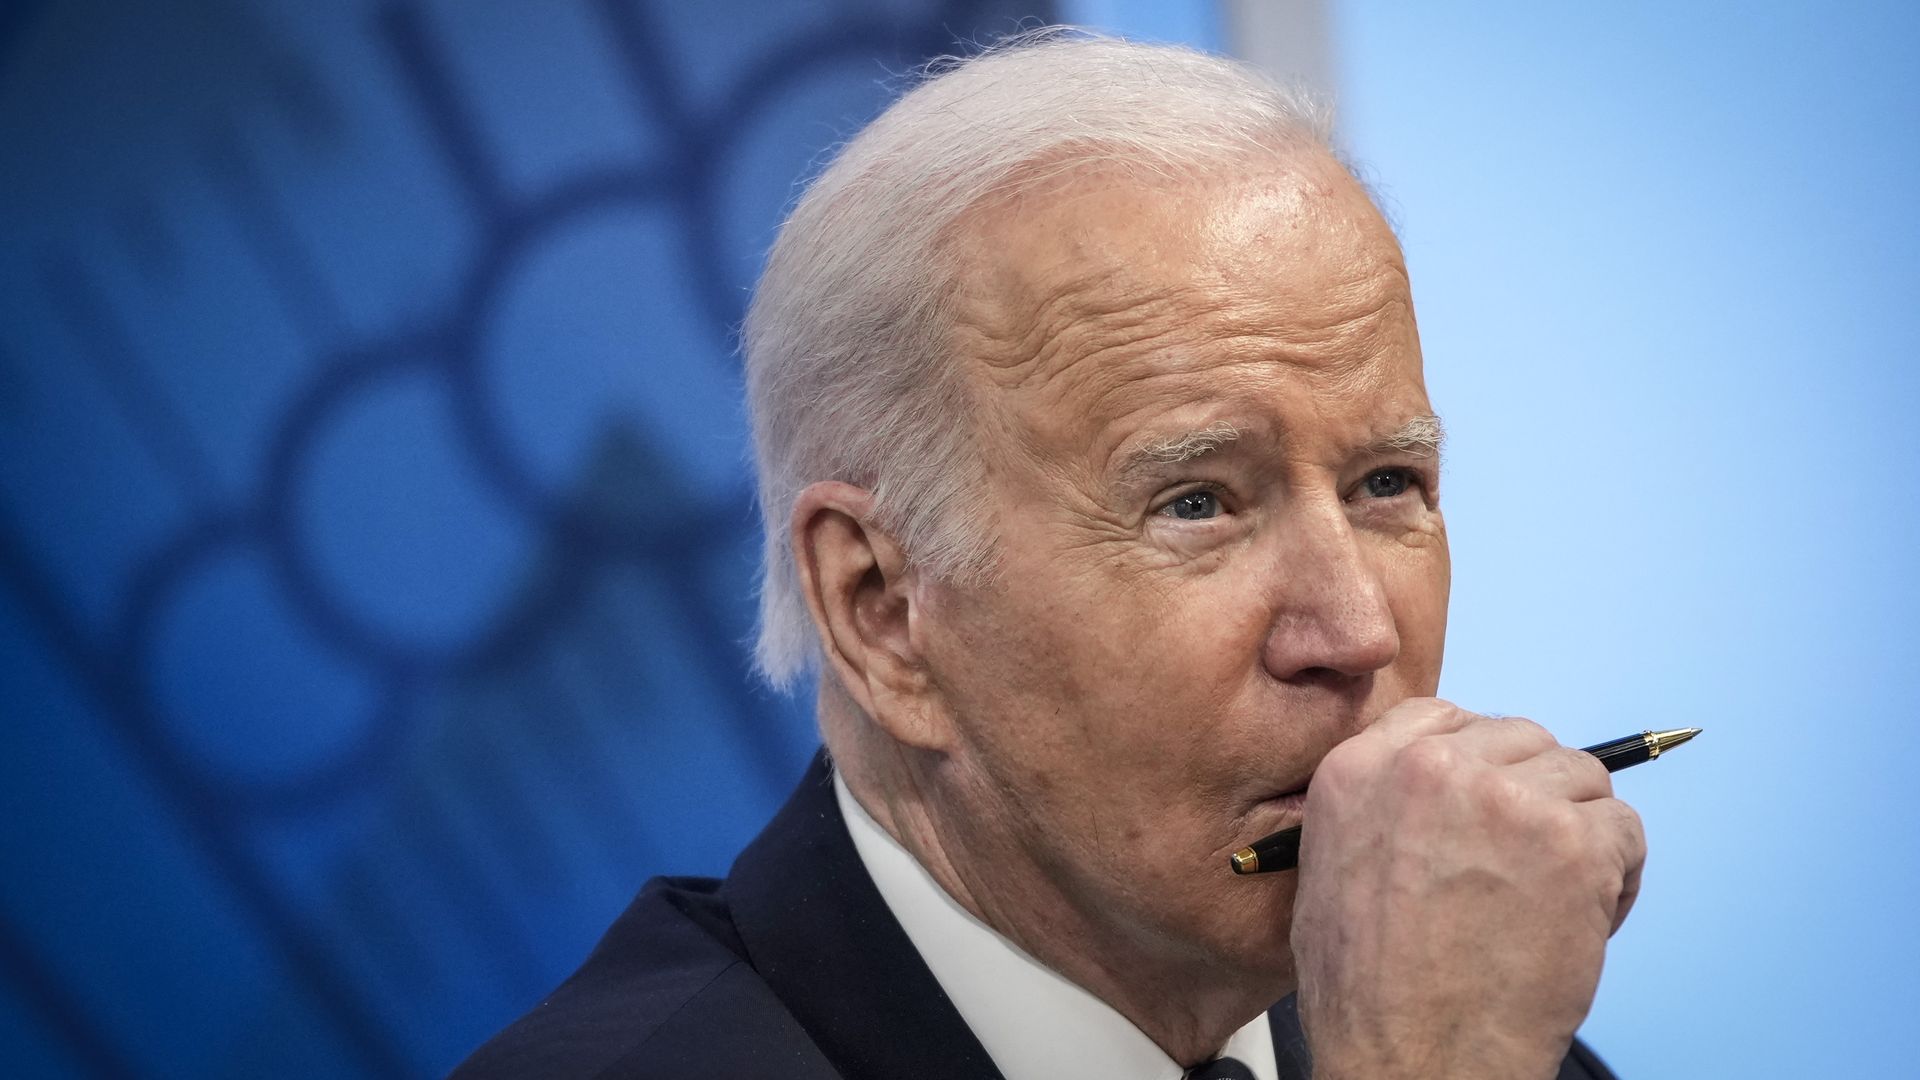 Photo of Joe Biden holding one hand to his chin